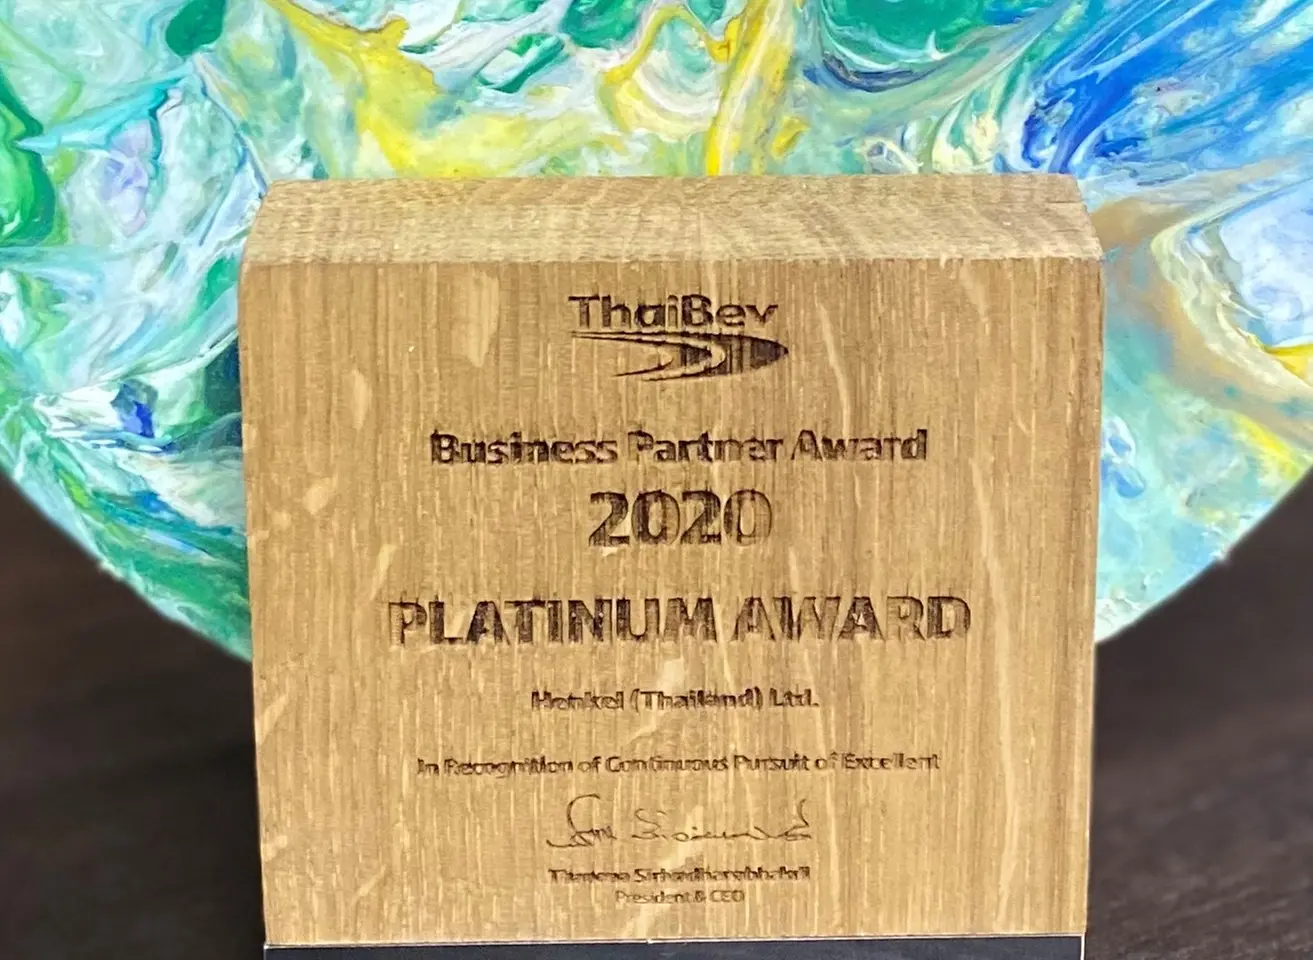 บริษัท เฮงเค็ล (ประเทศไทย) จำกัด ได้รับรางวัล Platinum Award 2020 จากบริษัท ไทยเบฟเวอเรจ จำกัด (มหาชน) โดยได้รับคะแนนสูงสุดใน 5 ด้าน ได้แก่ คุณภาพสินค้า, การค้าเชิงพาณิชย์, การส่งมอบสินค้า, การพัฒนาโครงการ, และ ความยั่งยืน